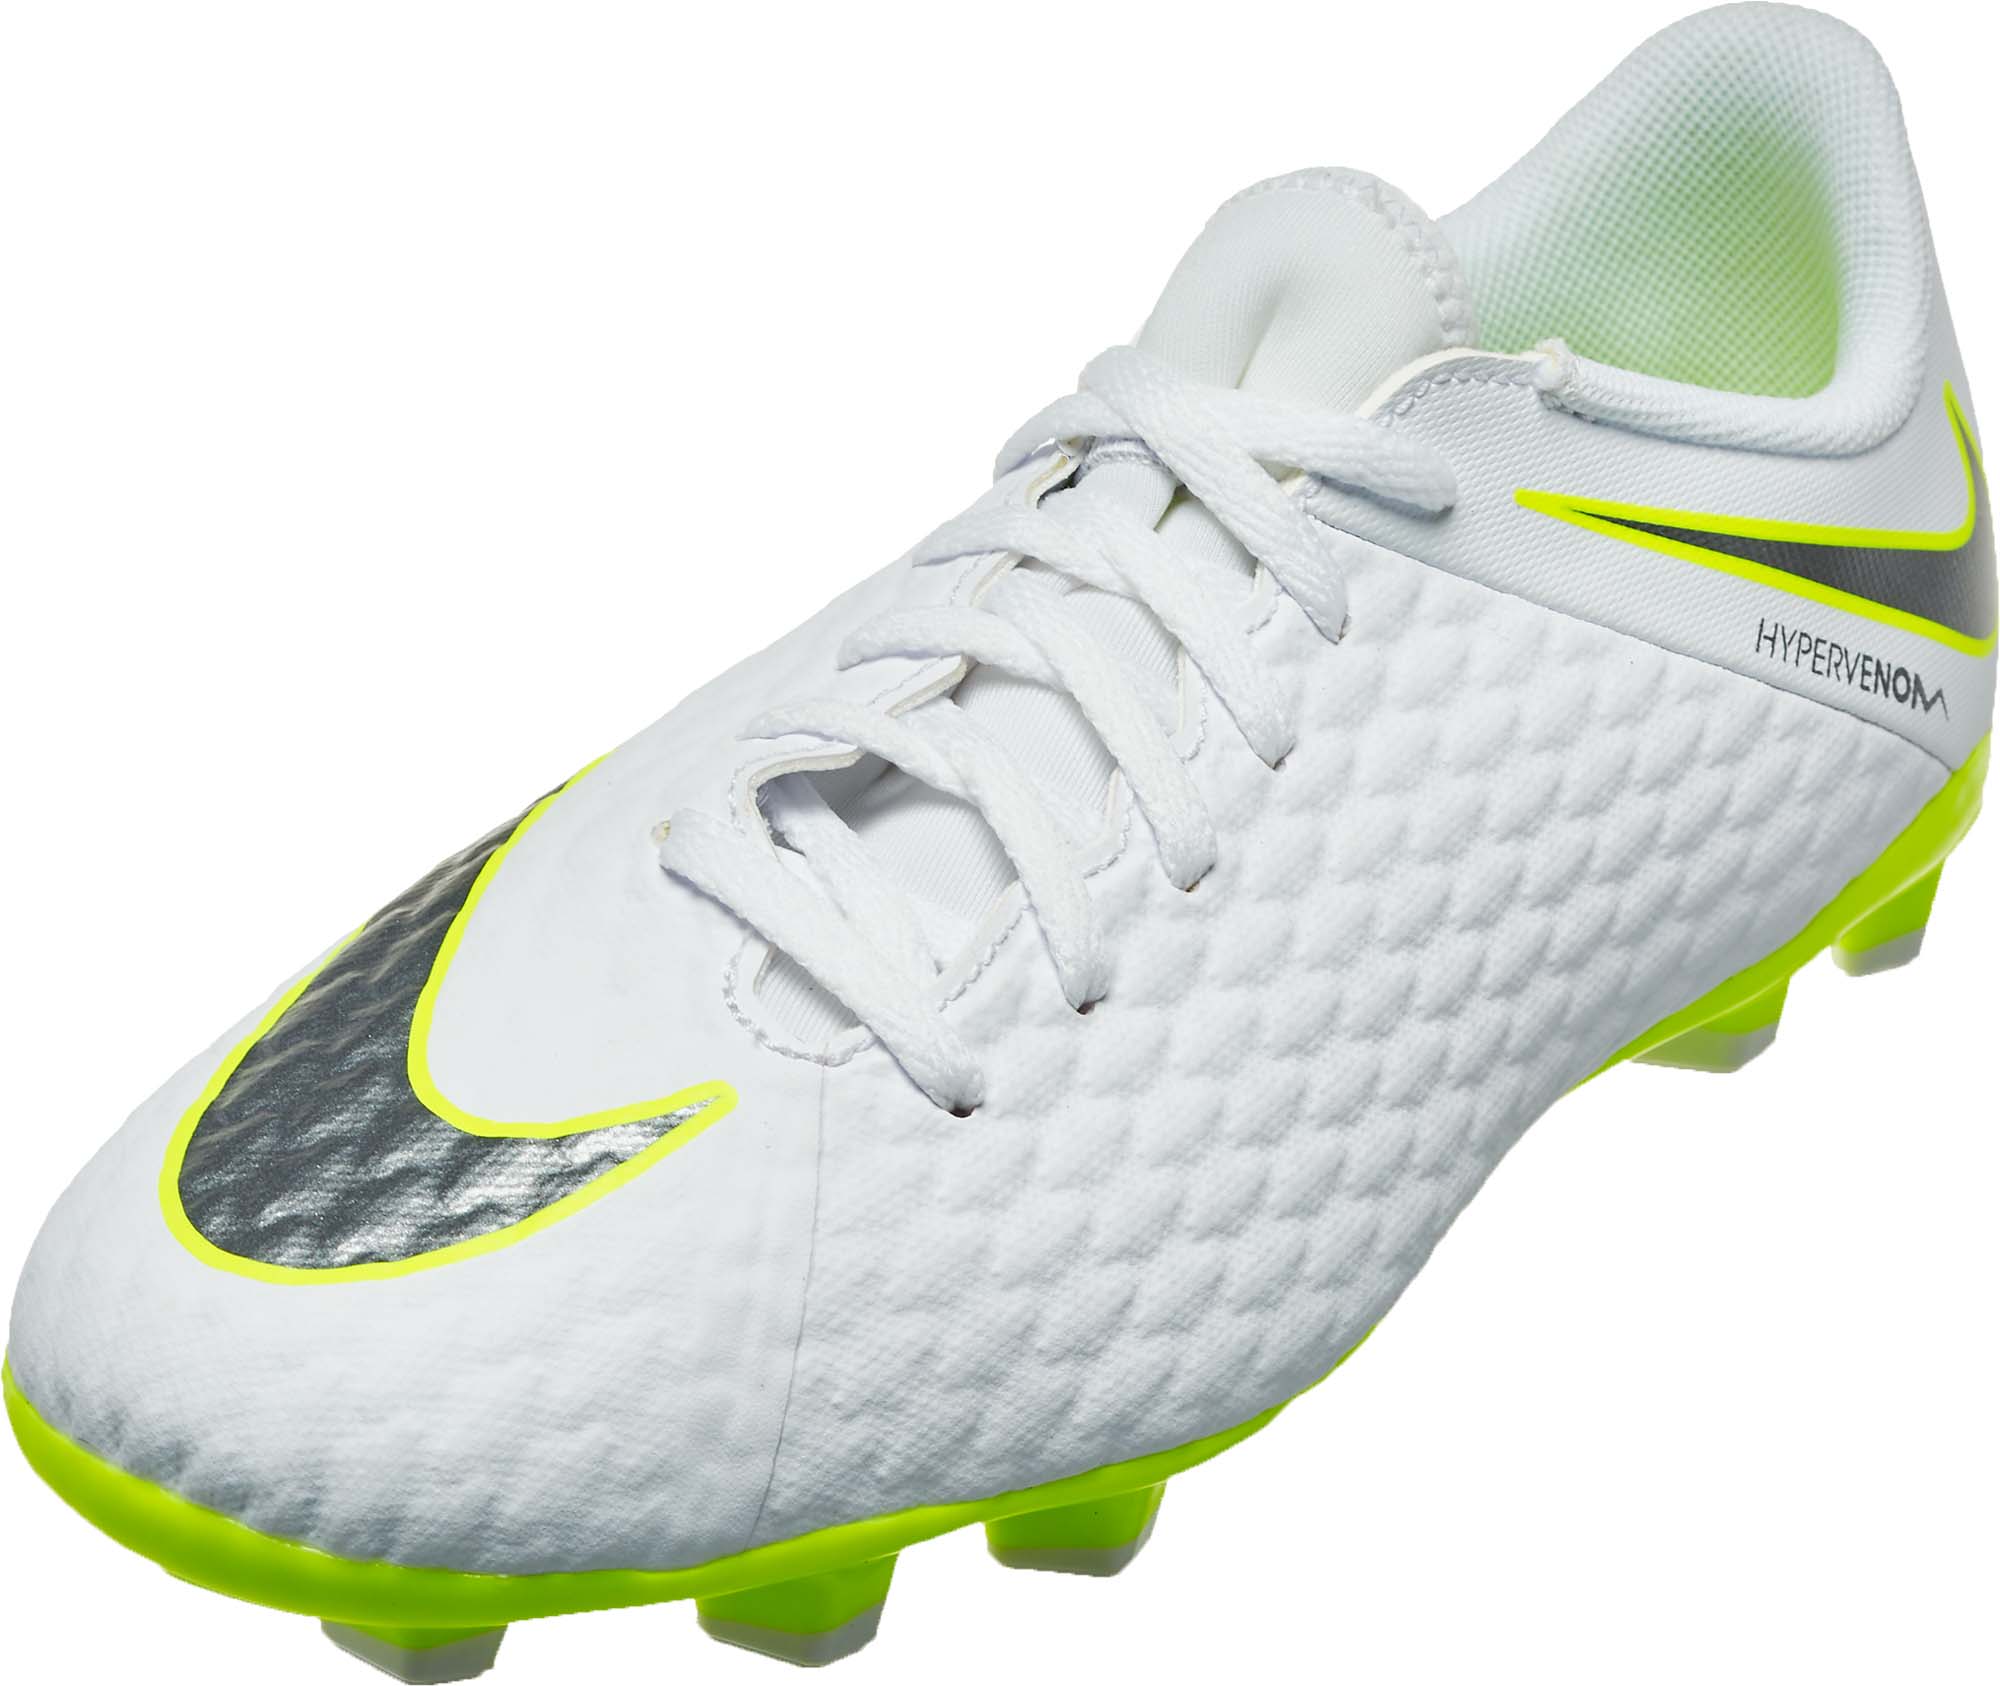 Nike Hypervenom Phantom 3 Academy FG - Youth - White/Volt - SoccerPro